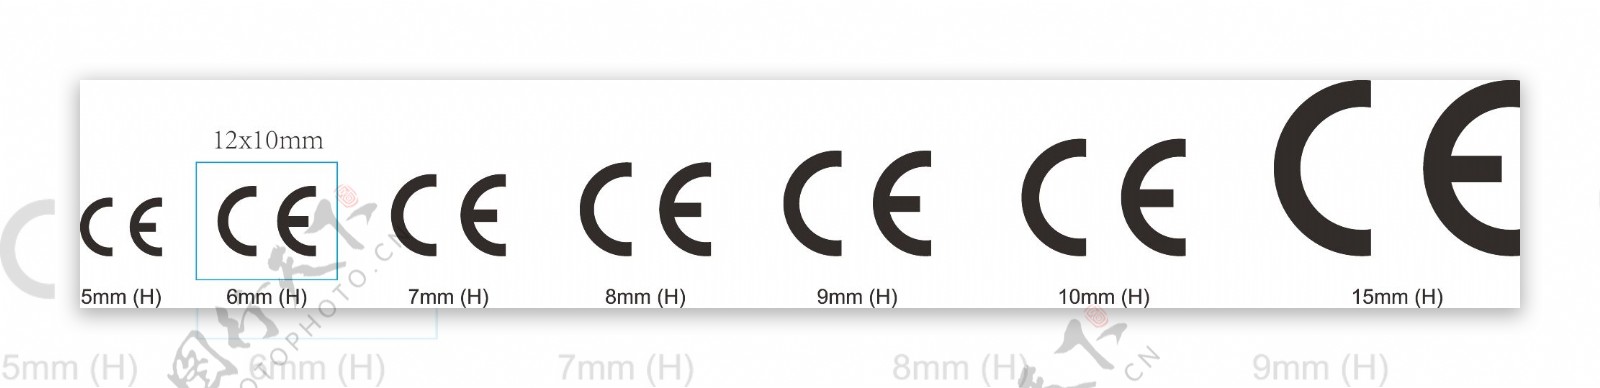 CE标志国际标准尺寸